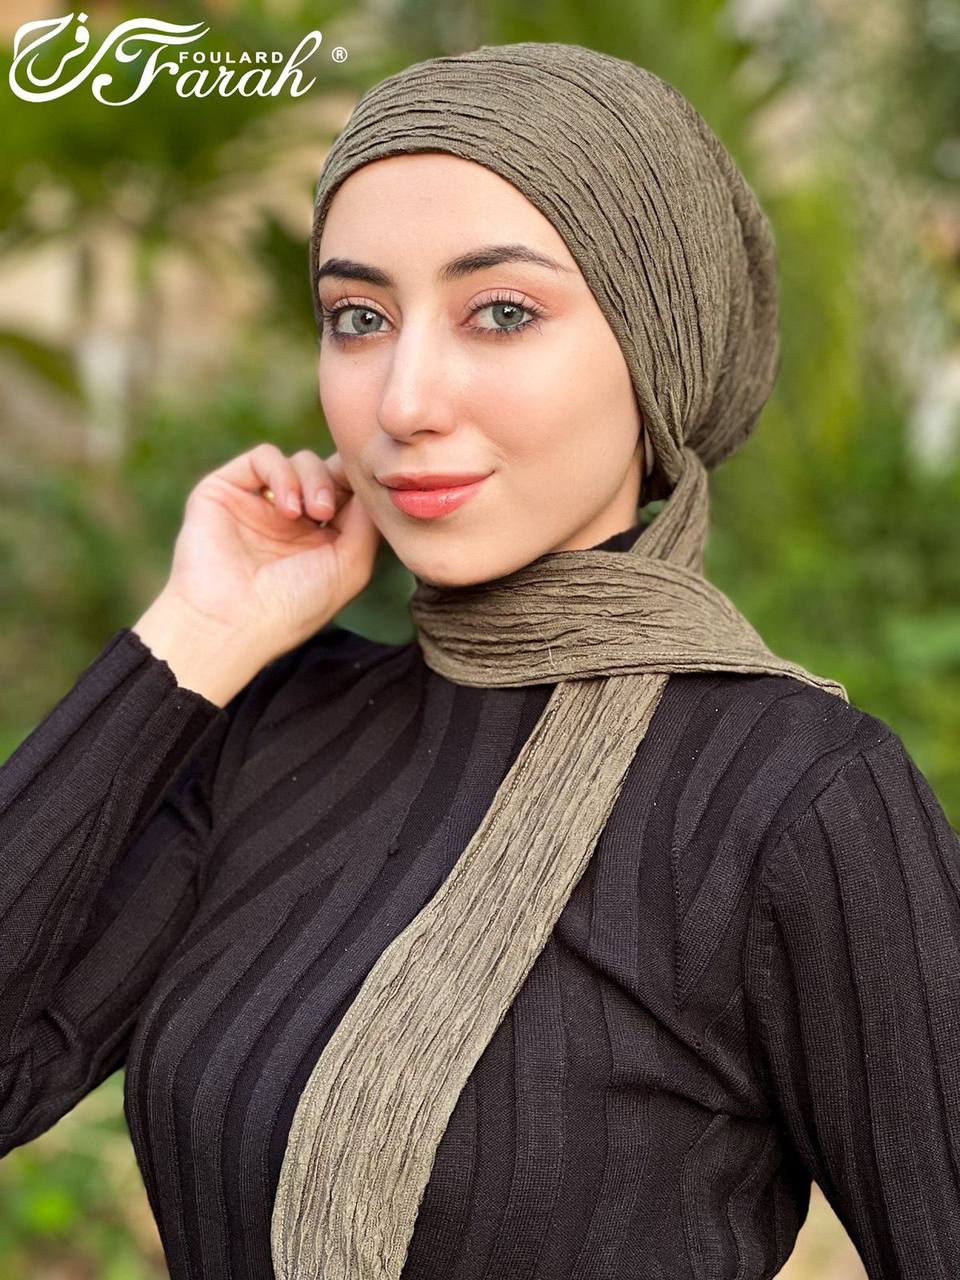 Elegant Pleated Turban Hijab - Stylish Headwrap for Modest Fashion - Coffee